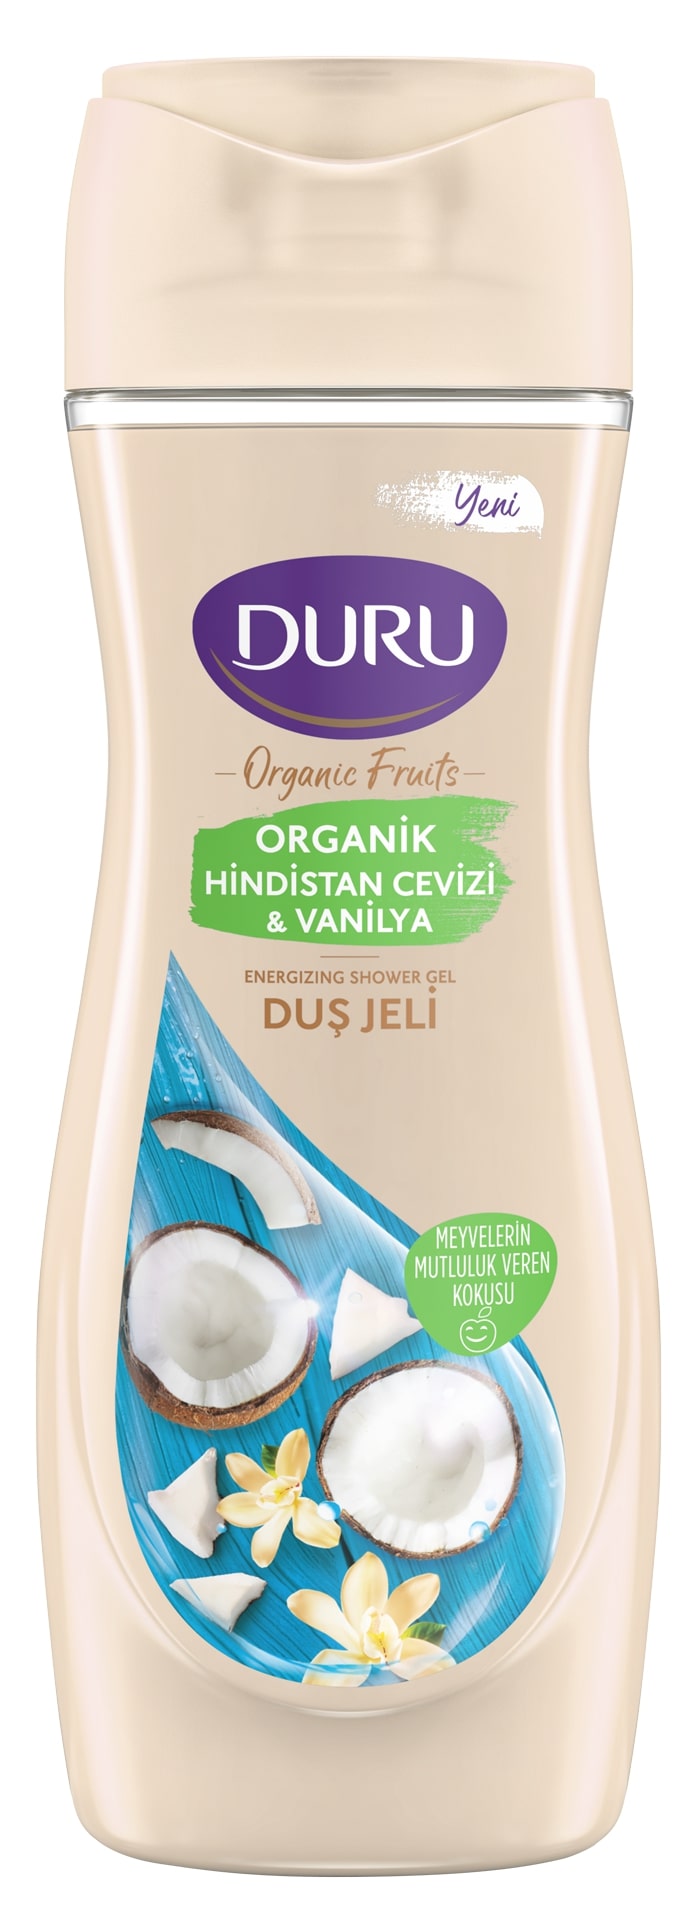 Гель для душа Duru Vanilla&Coconut, 500 мл наполнитель для кошачьего туалета с ароматом ванили и танжерина vanilla